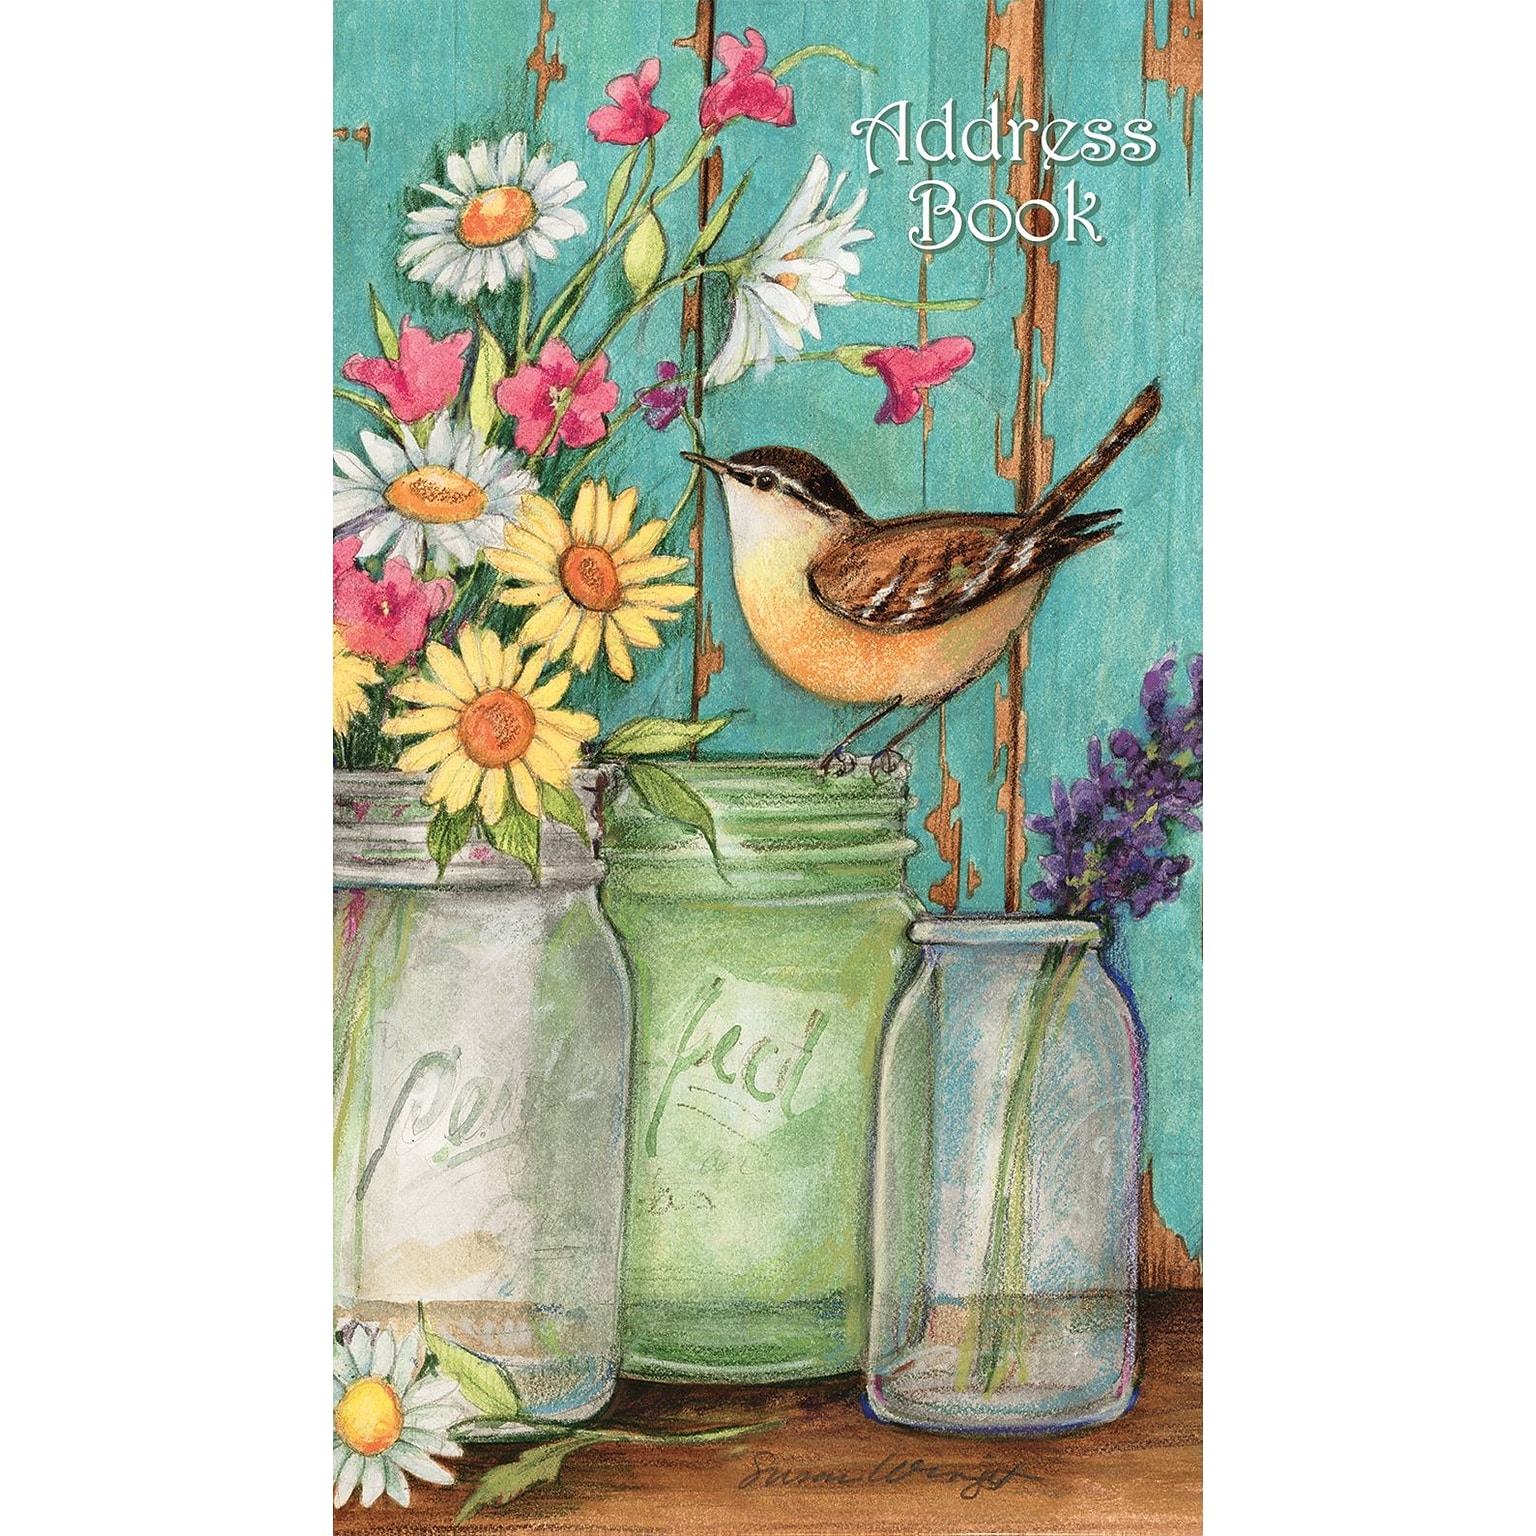 LANG Flower Jars 3.5 x 6.38 Pocket Address Book, Multicolor (1072027)